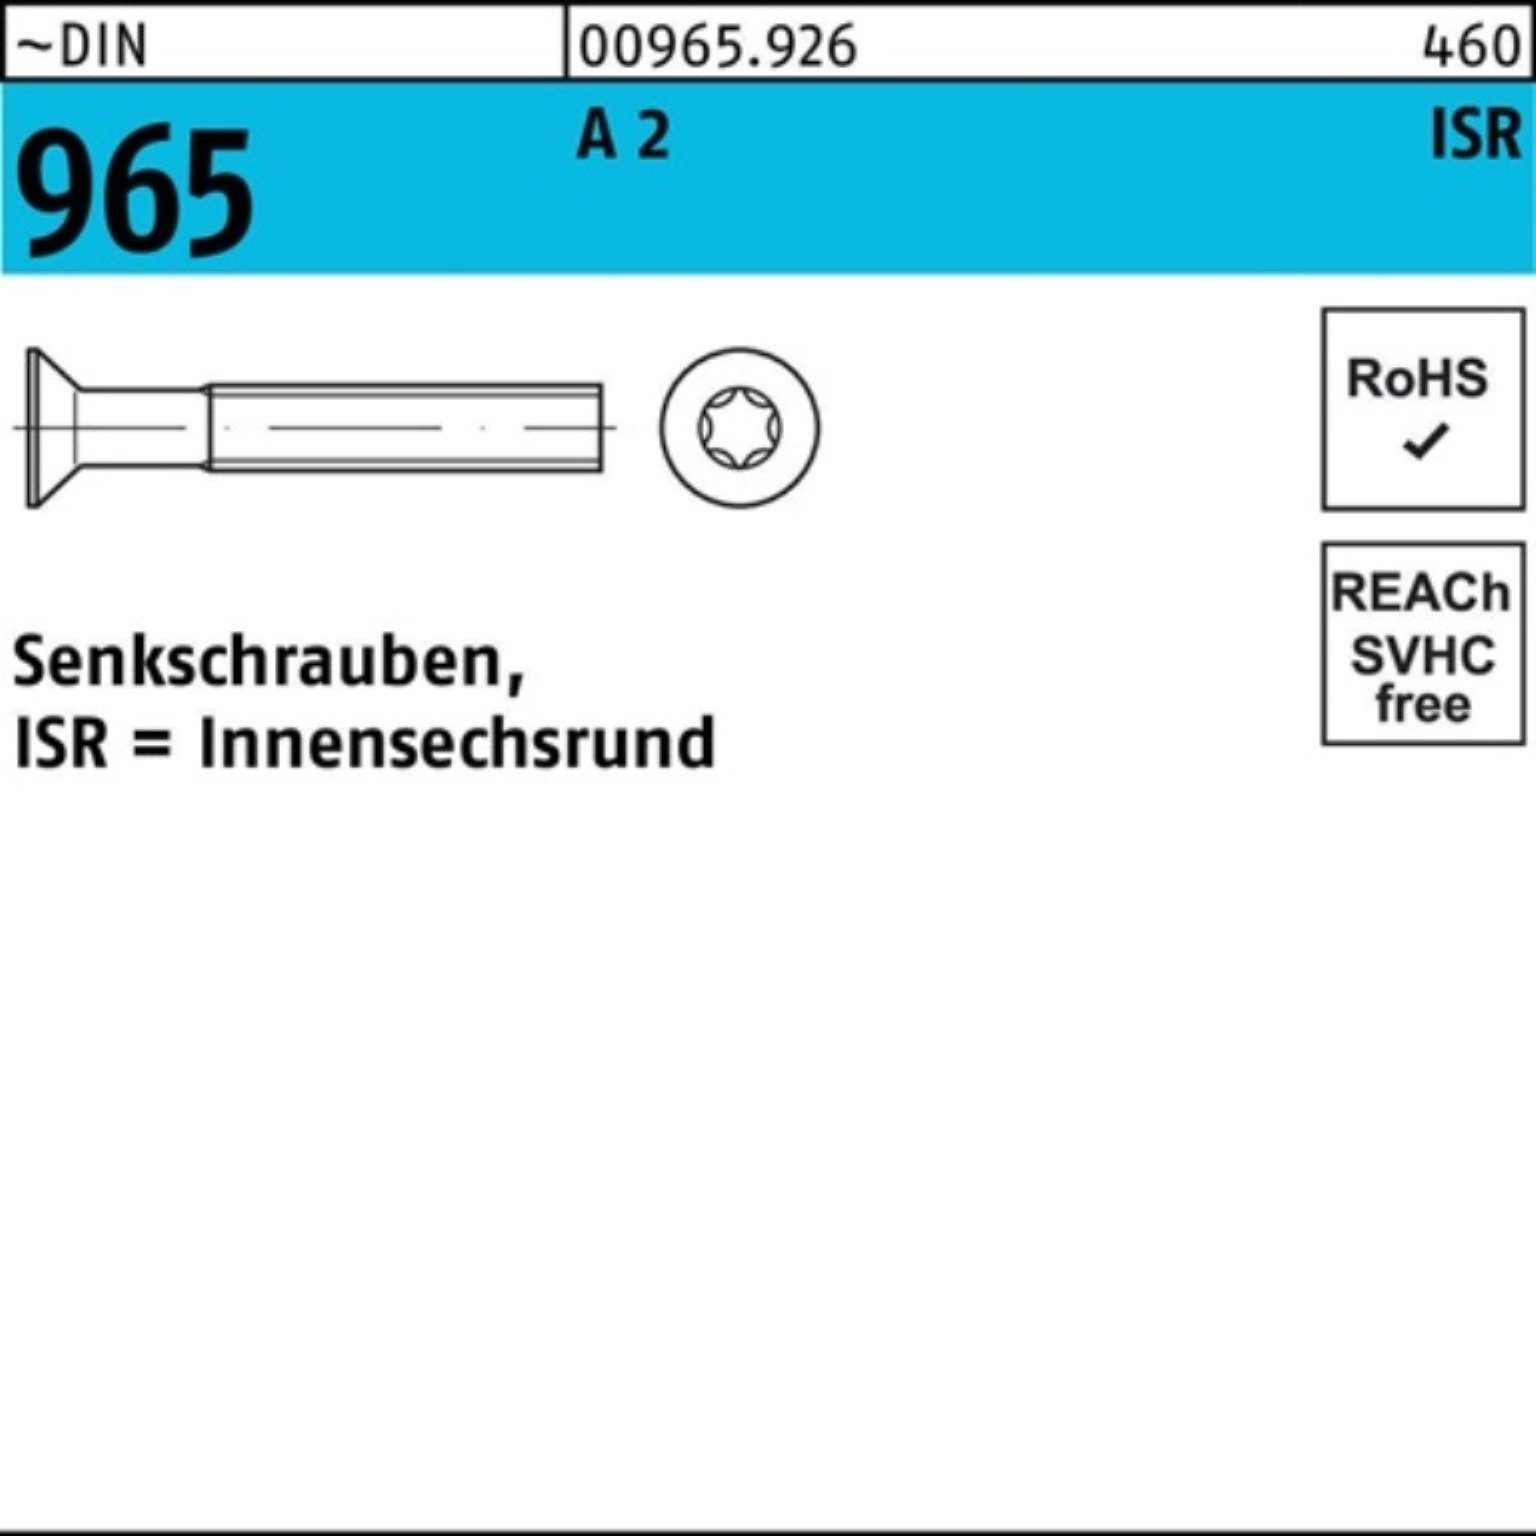 Reyher Senkschraube 1000er Pack A 965 DIN 2 Stück ISR Senkschraube ~DIN 9 M2,5x 5-T8 1000